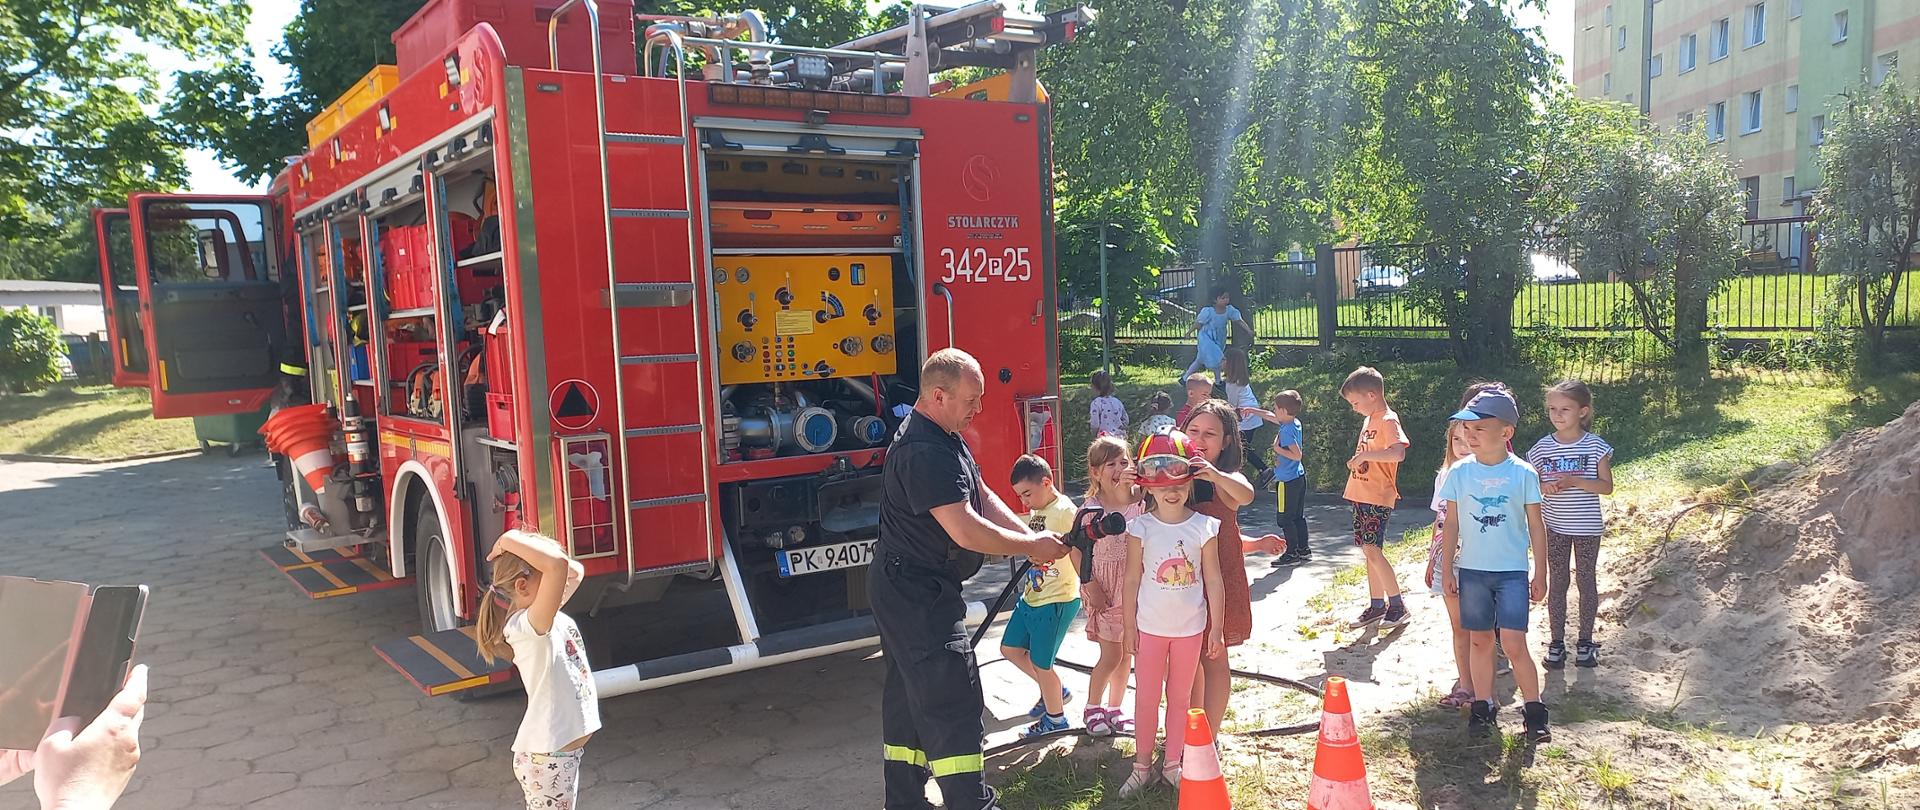 Zdjęcie wykonane na terenie przedszkola. Widać trawę oraz drzewa. W centrum zdjęcia strażak oraz dziecko. Widać zabudowę samochodu ratowniczo-gaśniczego.